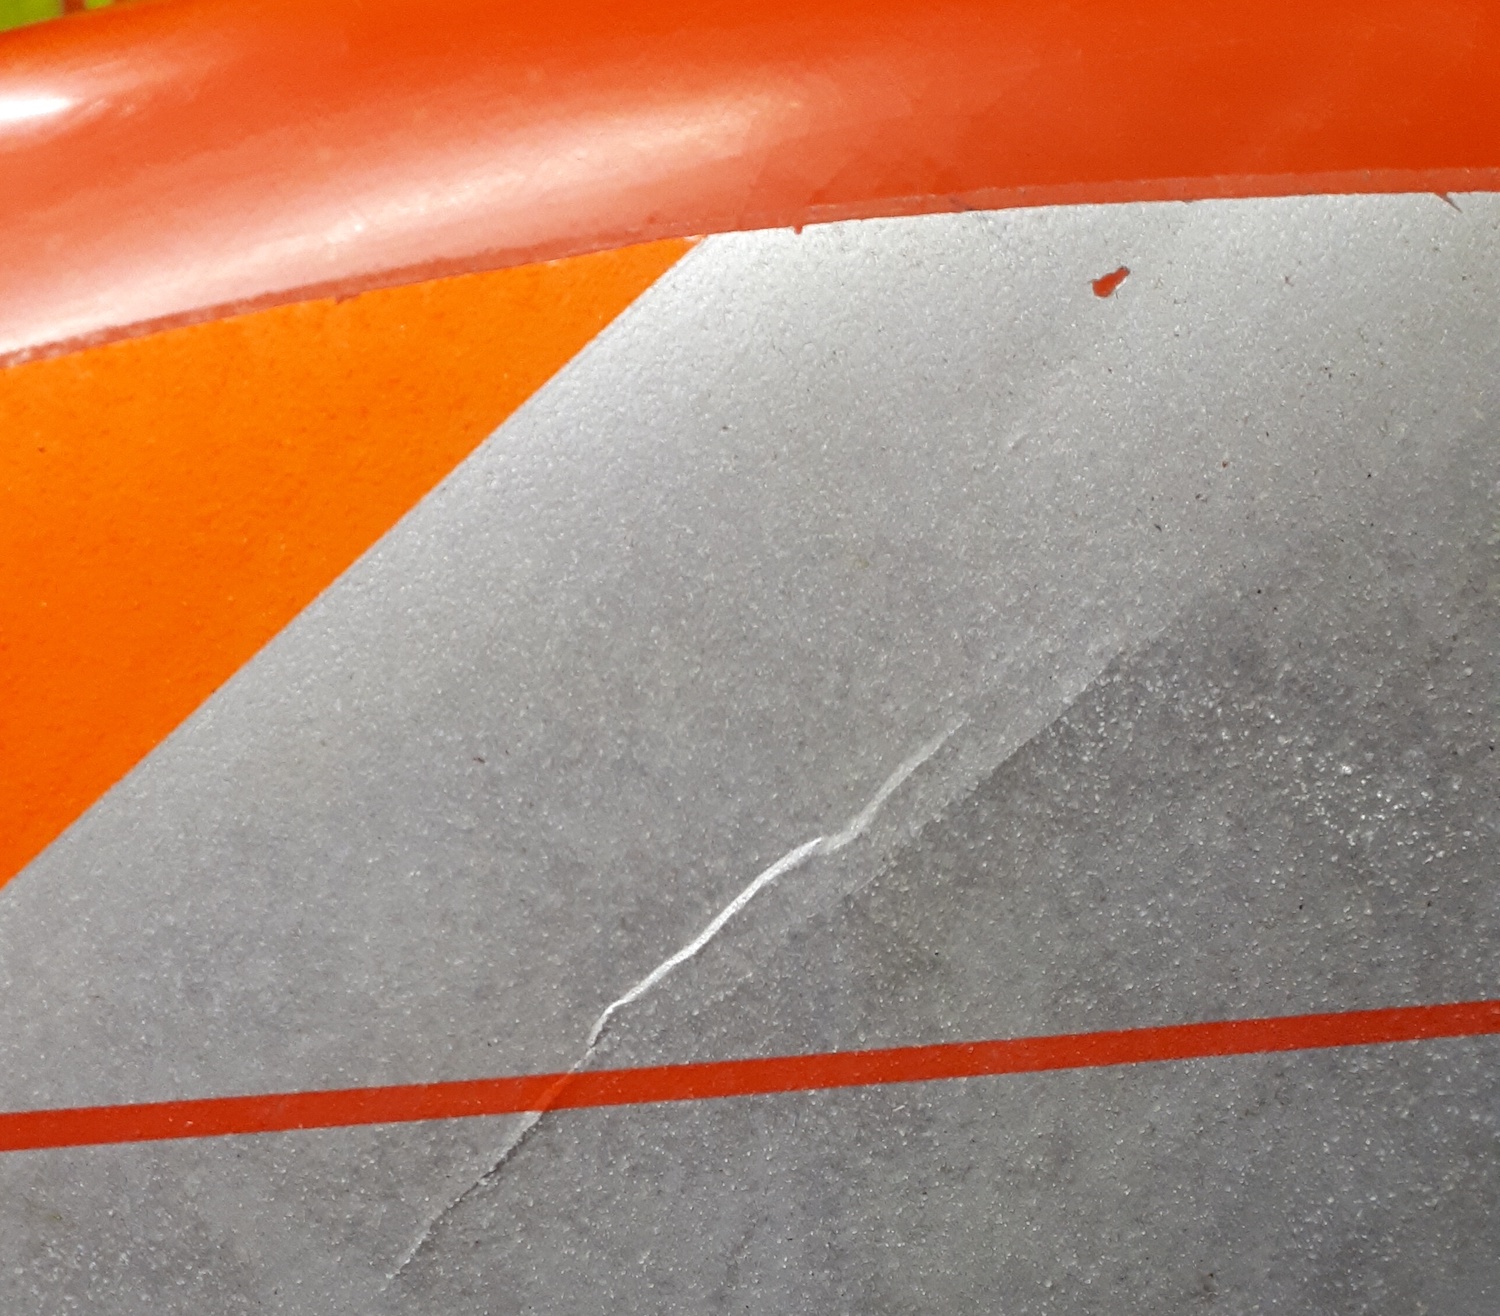 Closeup of surface damage.